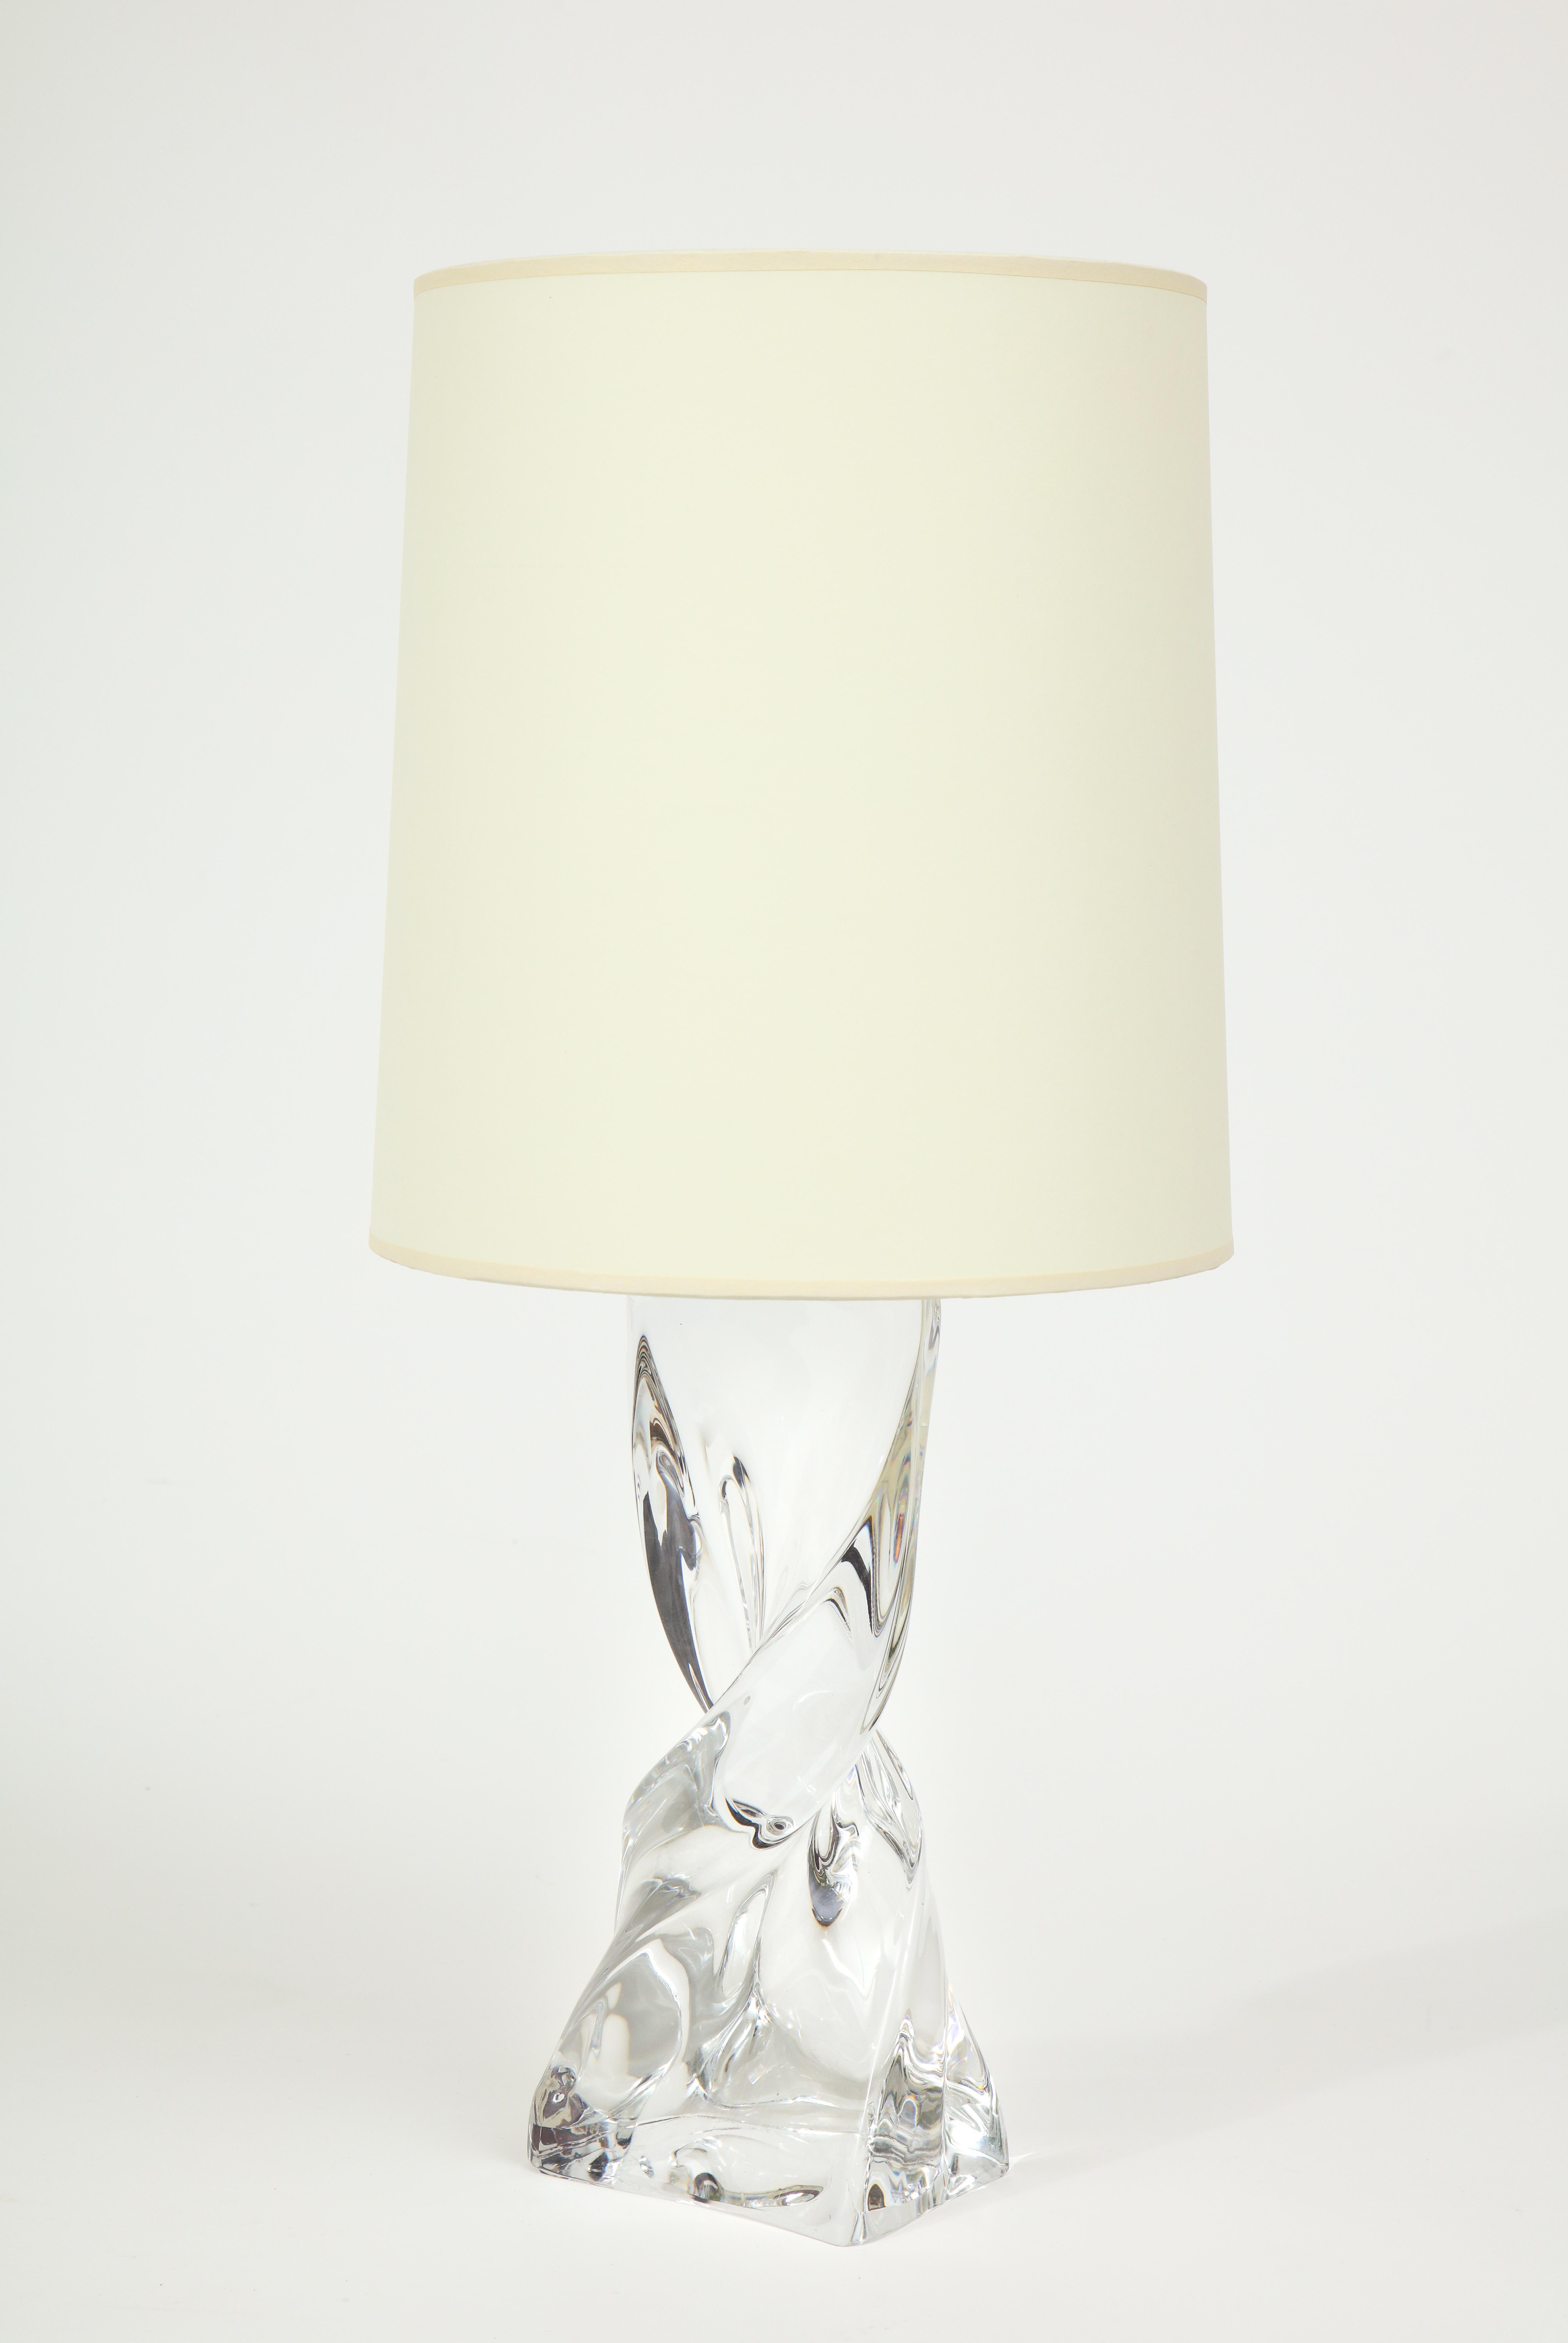 Lampe de table en cristal de Baccarat

Belle lampe en cristal de Baccarat. Il s'agit d'une pièce lourde et d'une fabrication exceptionnelle. Importé de France. On pense qu'il a été fabriqué dans les années 1980. Abat-jour non inclus
La lampe est à